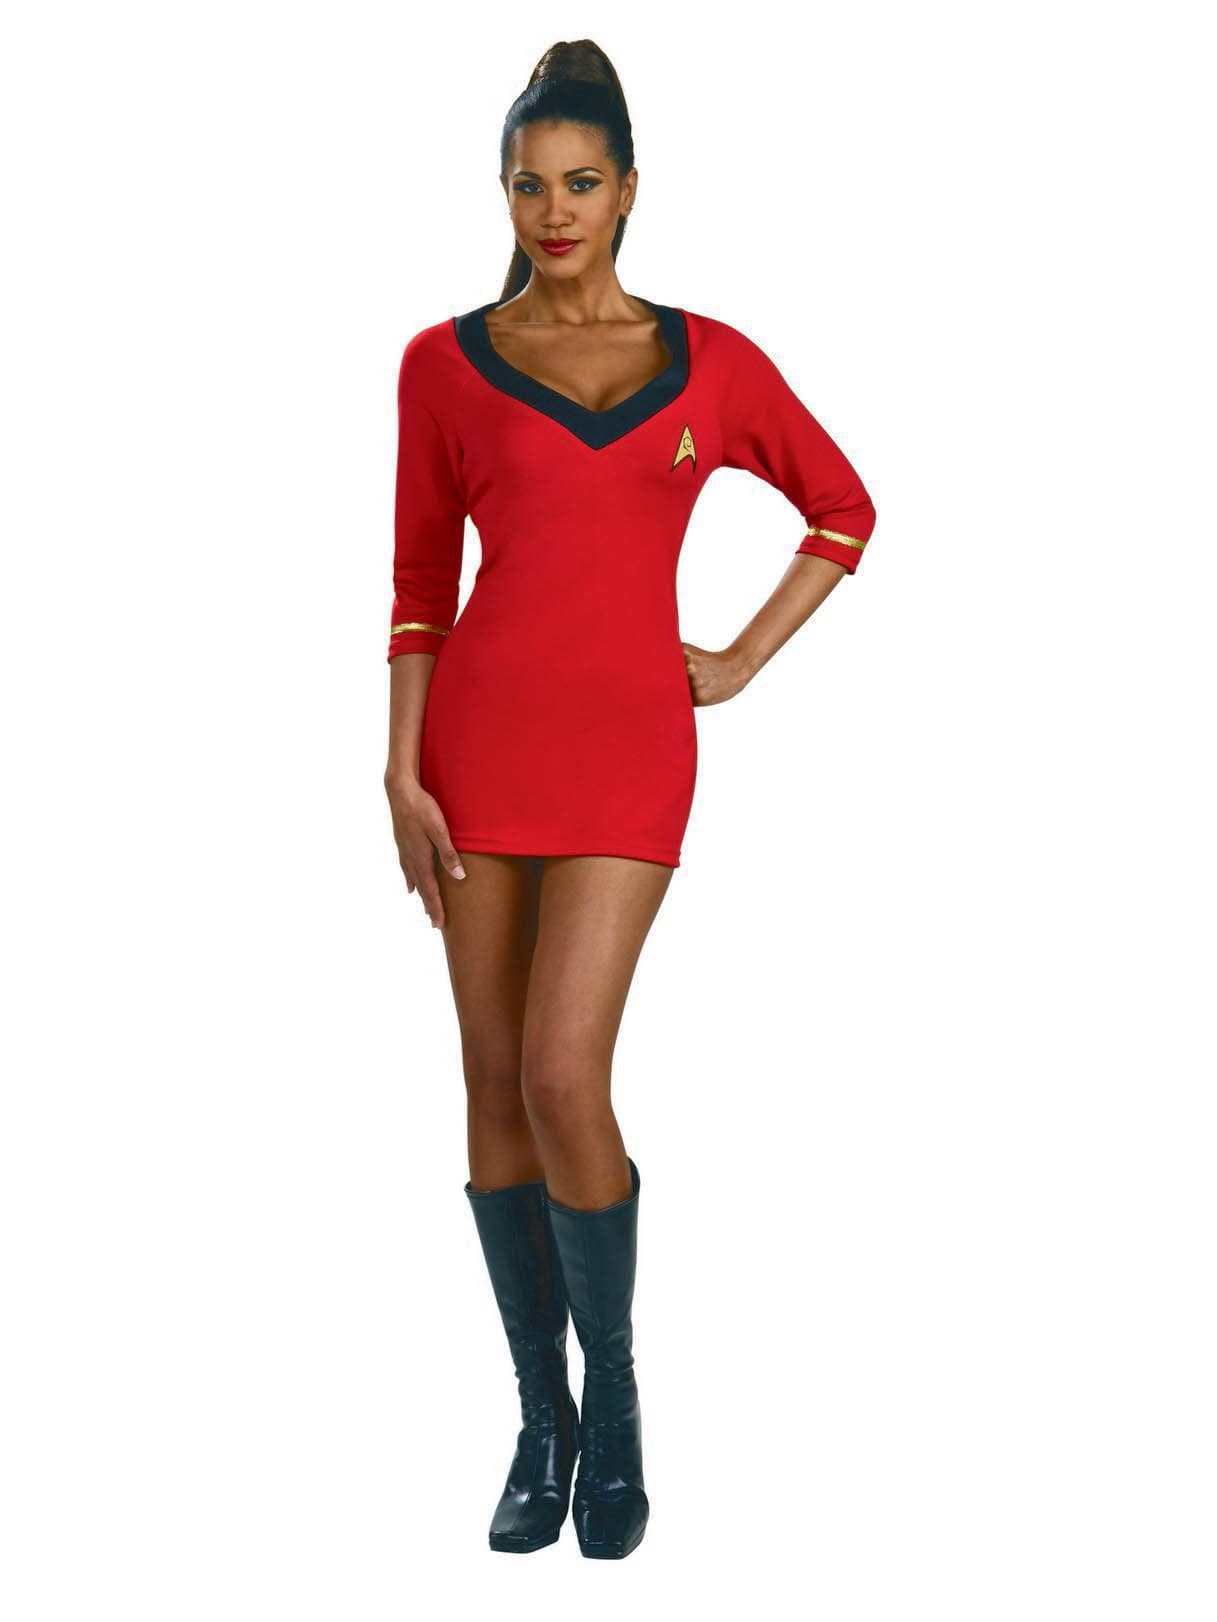 Women's Sexy Star Trek Uhura Costume - costumes.com